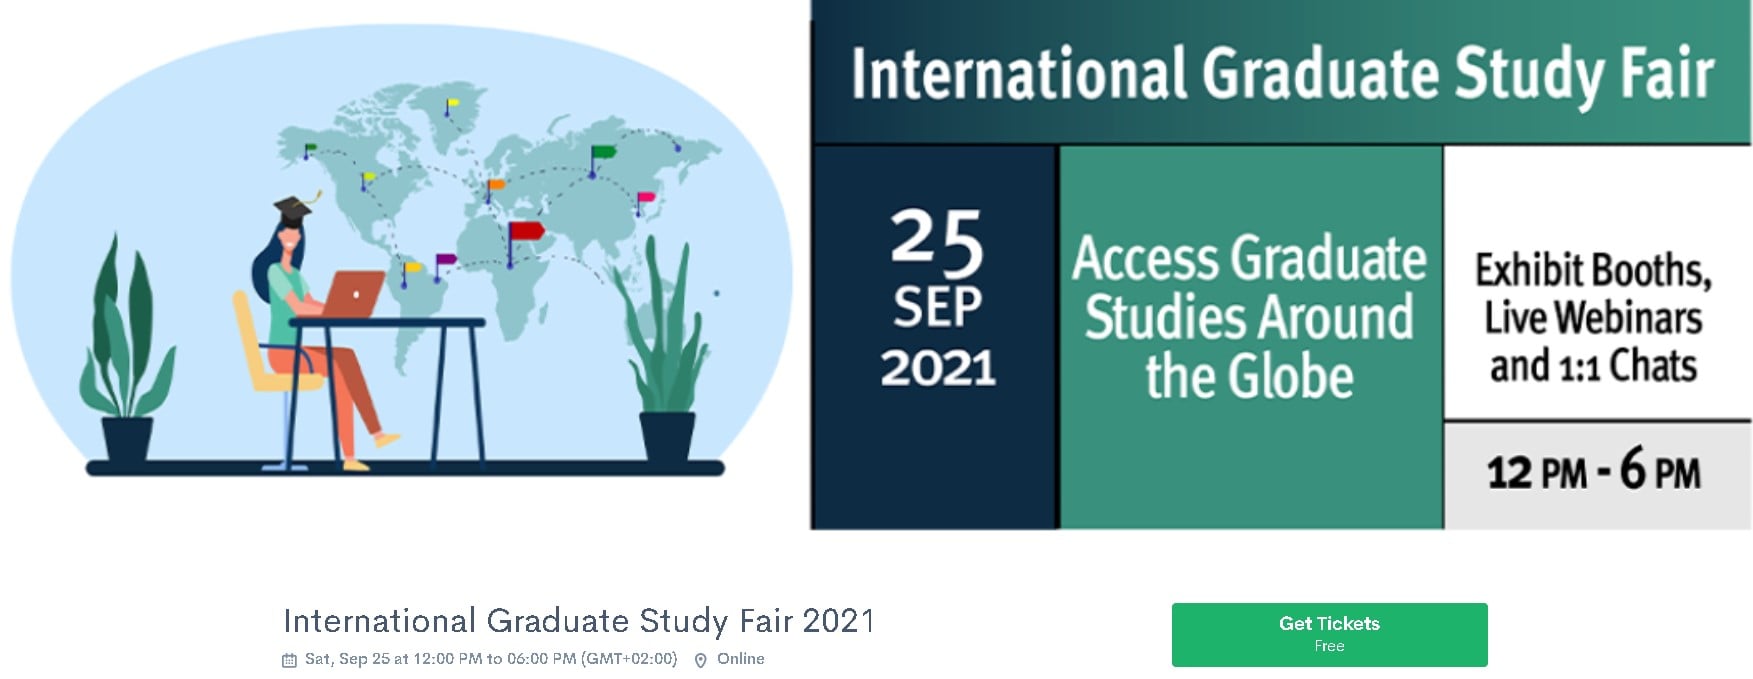 الملتقى الدولي للدراسات العليا 2021 